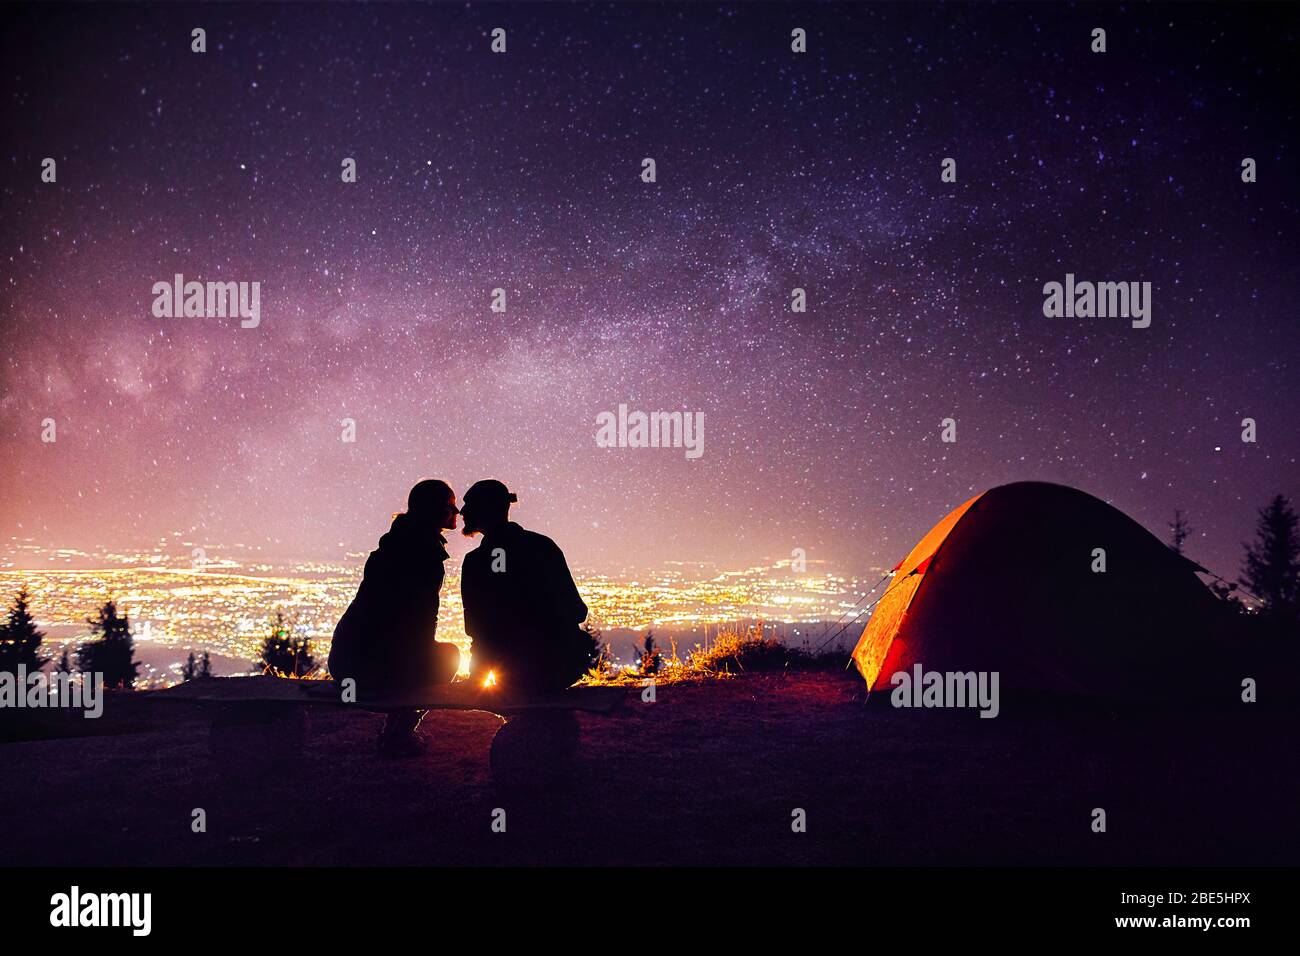 Glückliches Paar in silhouette Küssen in der Nähe von Lagerfeuer und orange Zelt. Nachthimmel mit milchstrasse Sterne und die Lichter der Stadt im Hintergrund. Stockfoto